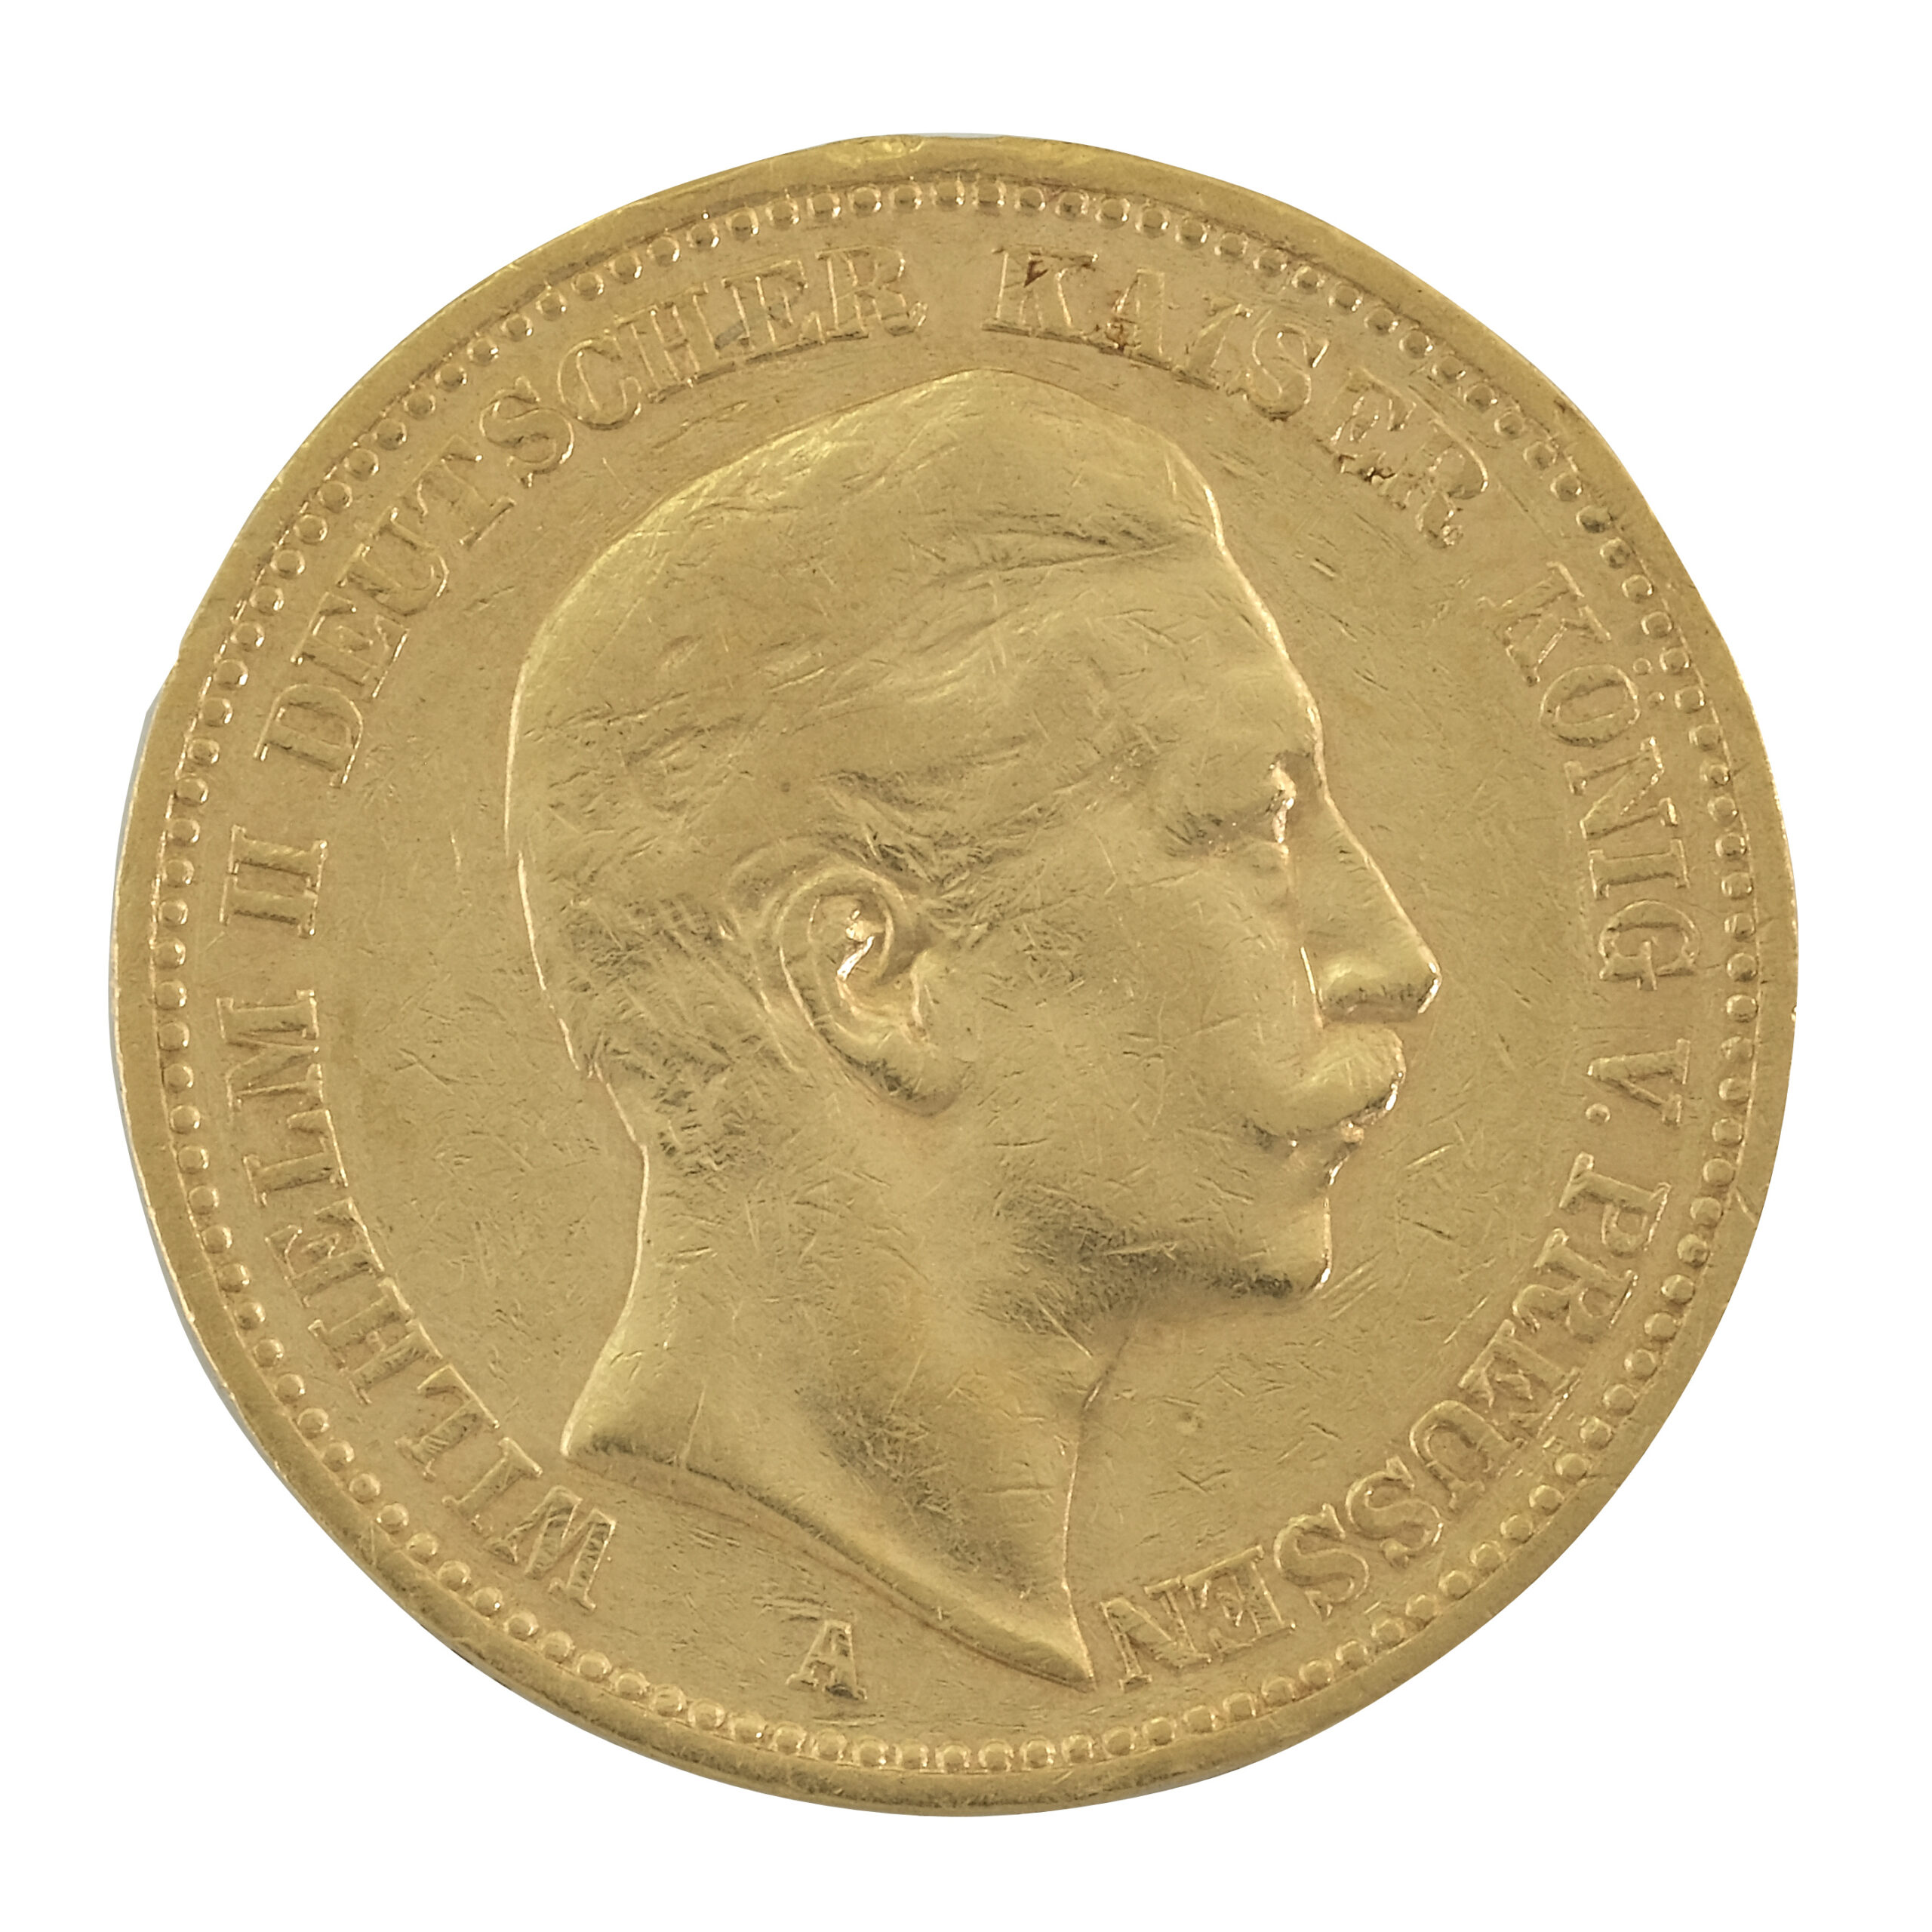 20 Mark German Wilhelm II Gold Coin (Best Value)